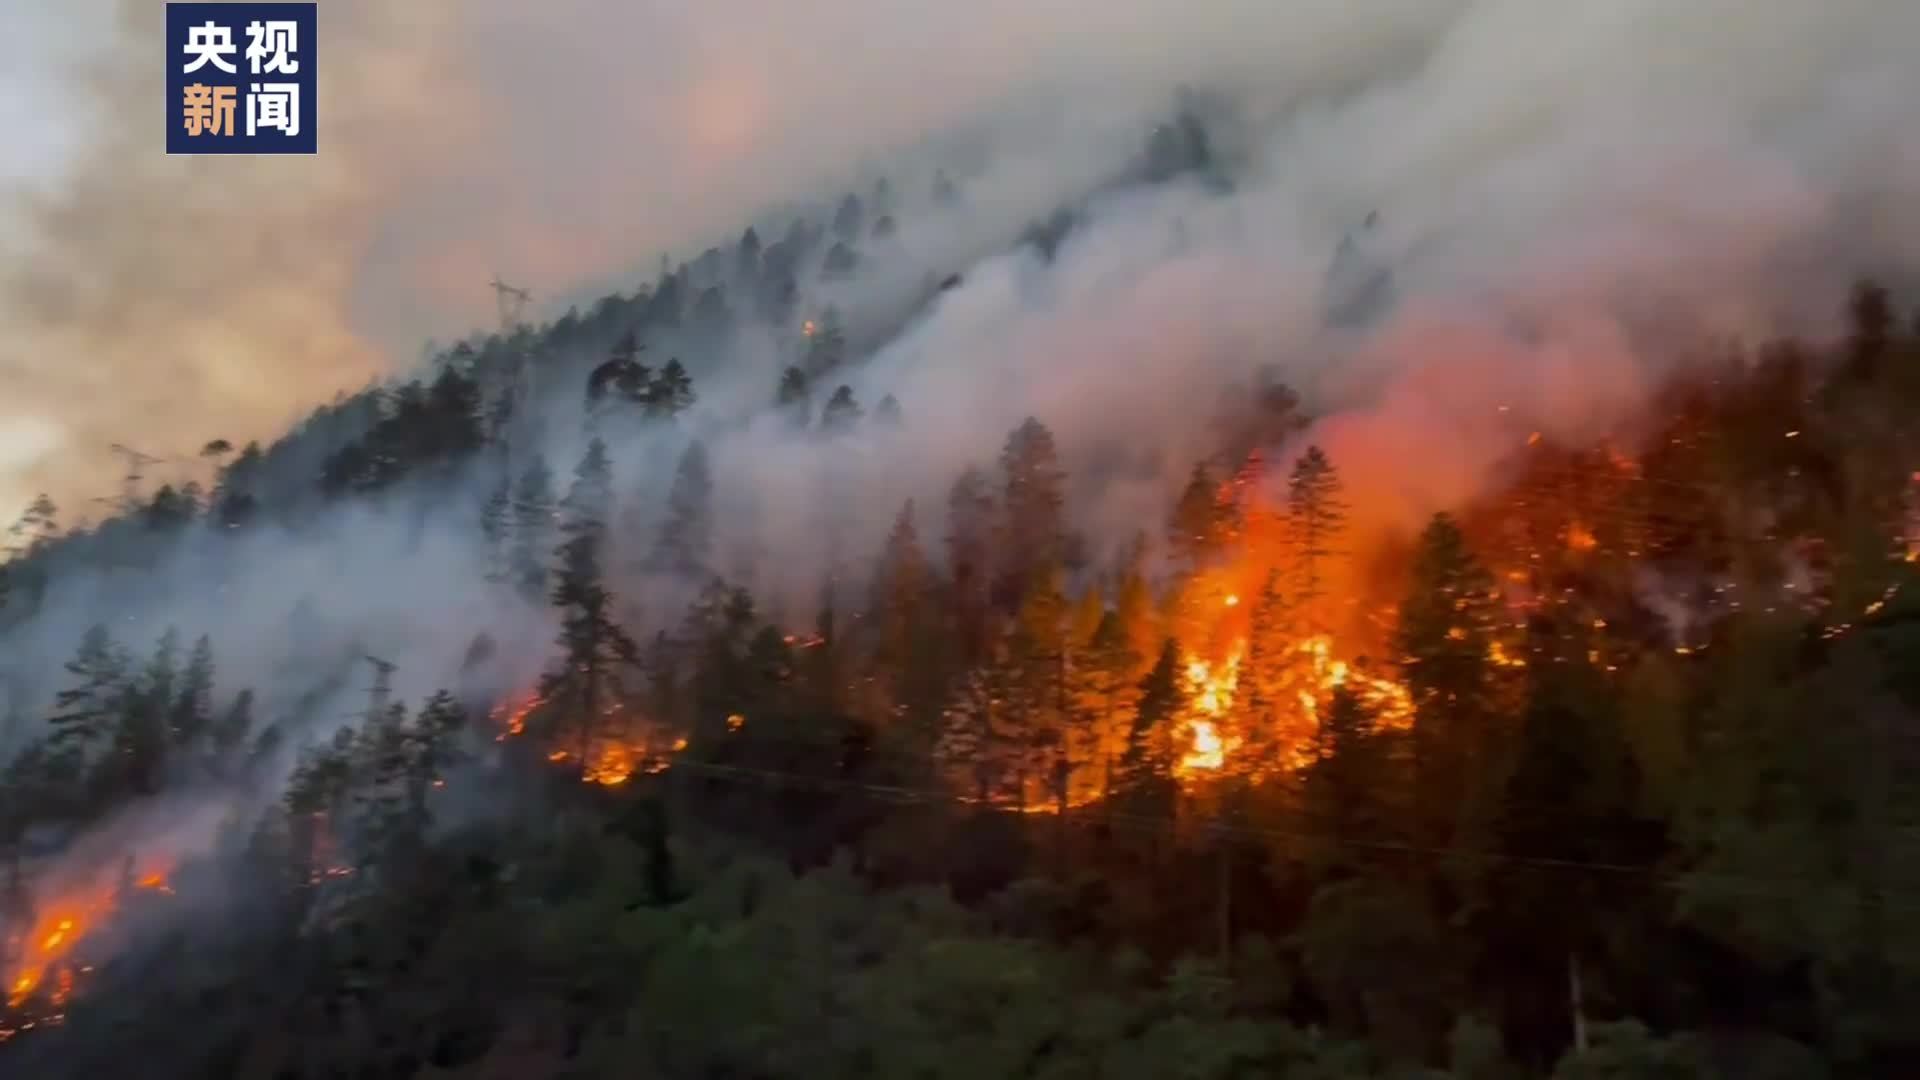 云南安宁发生森林大火 目前火势可控无伤亡